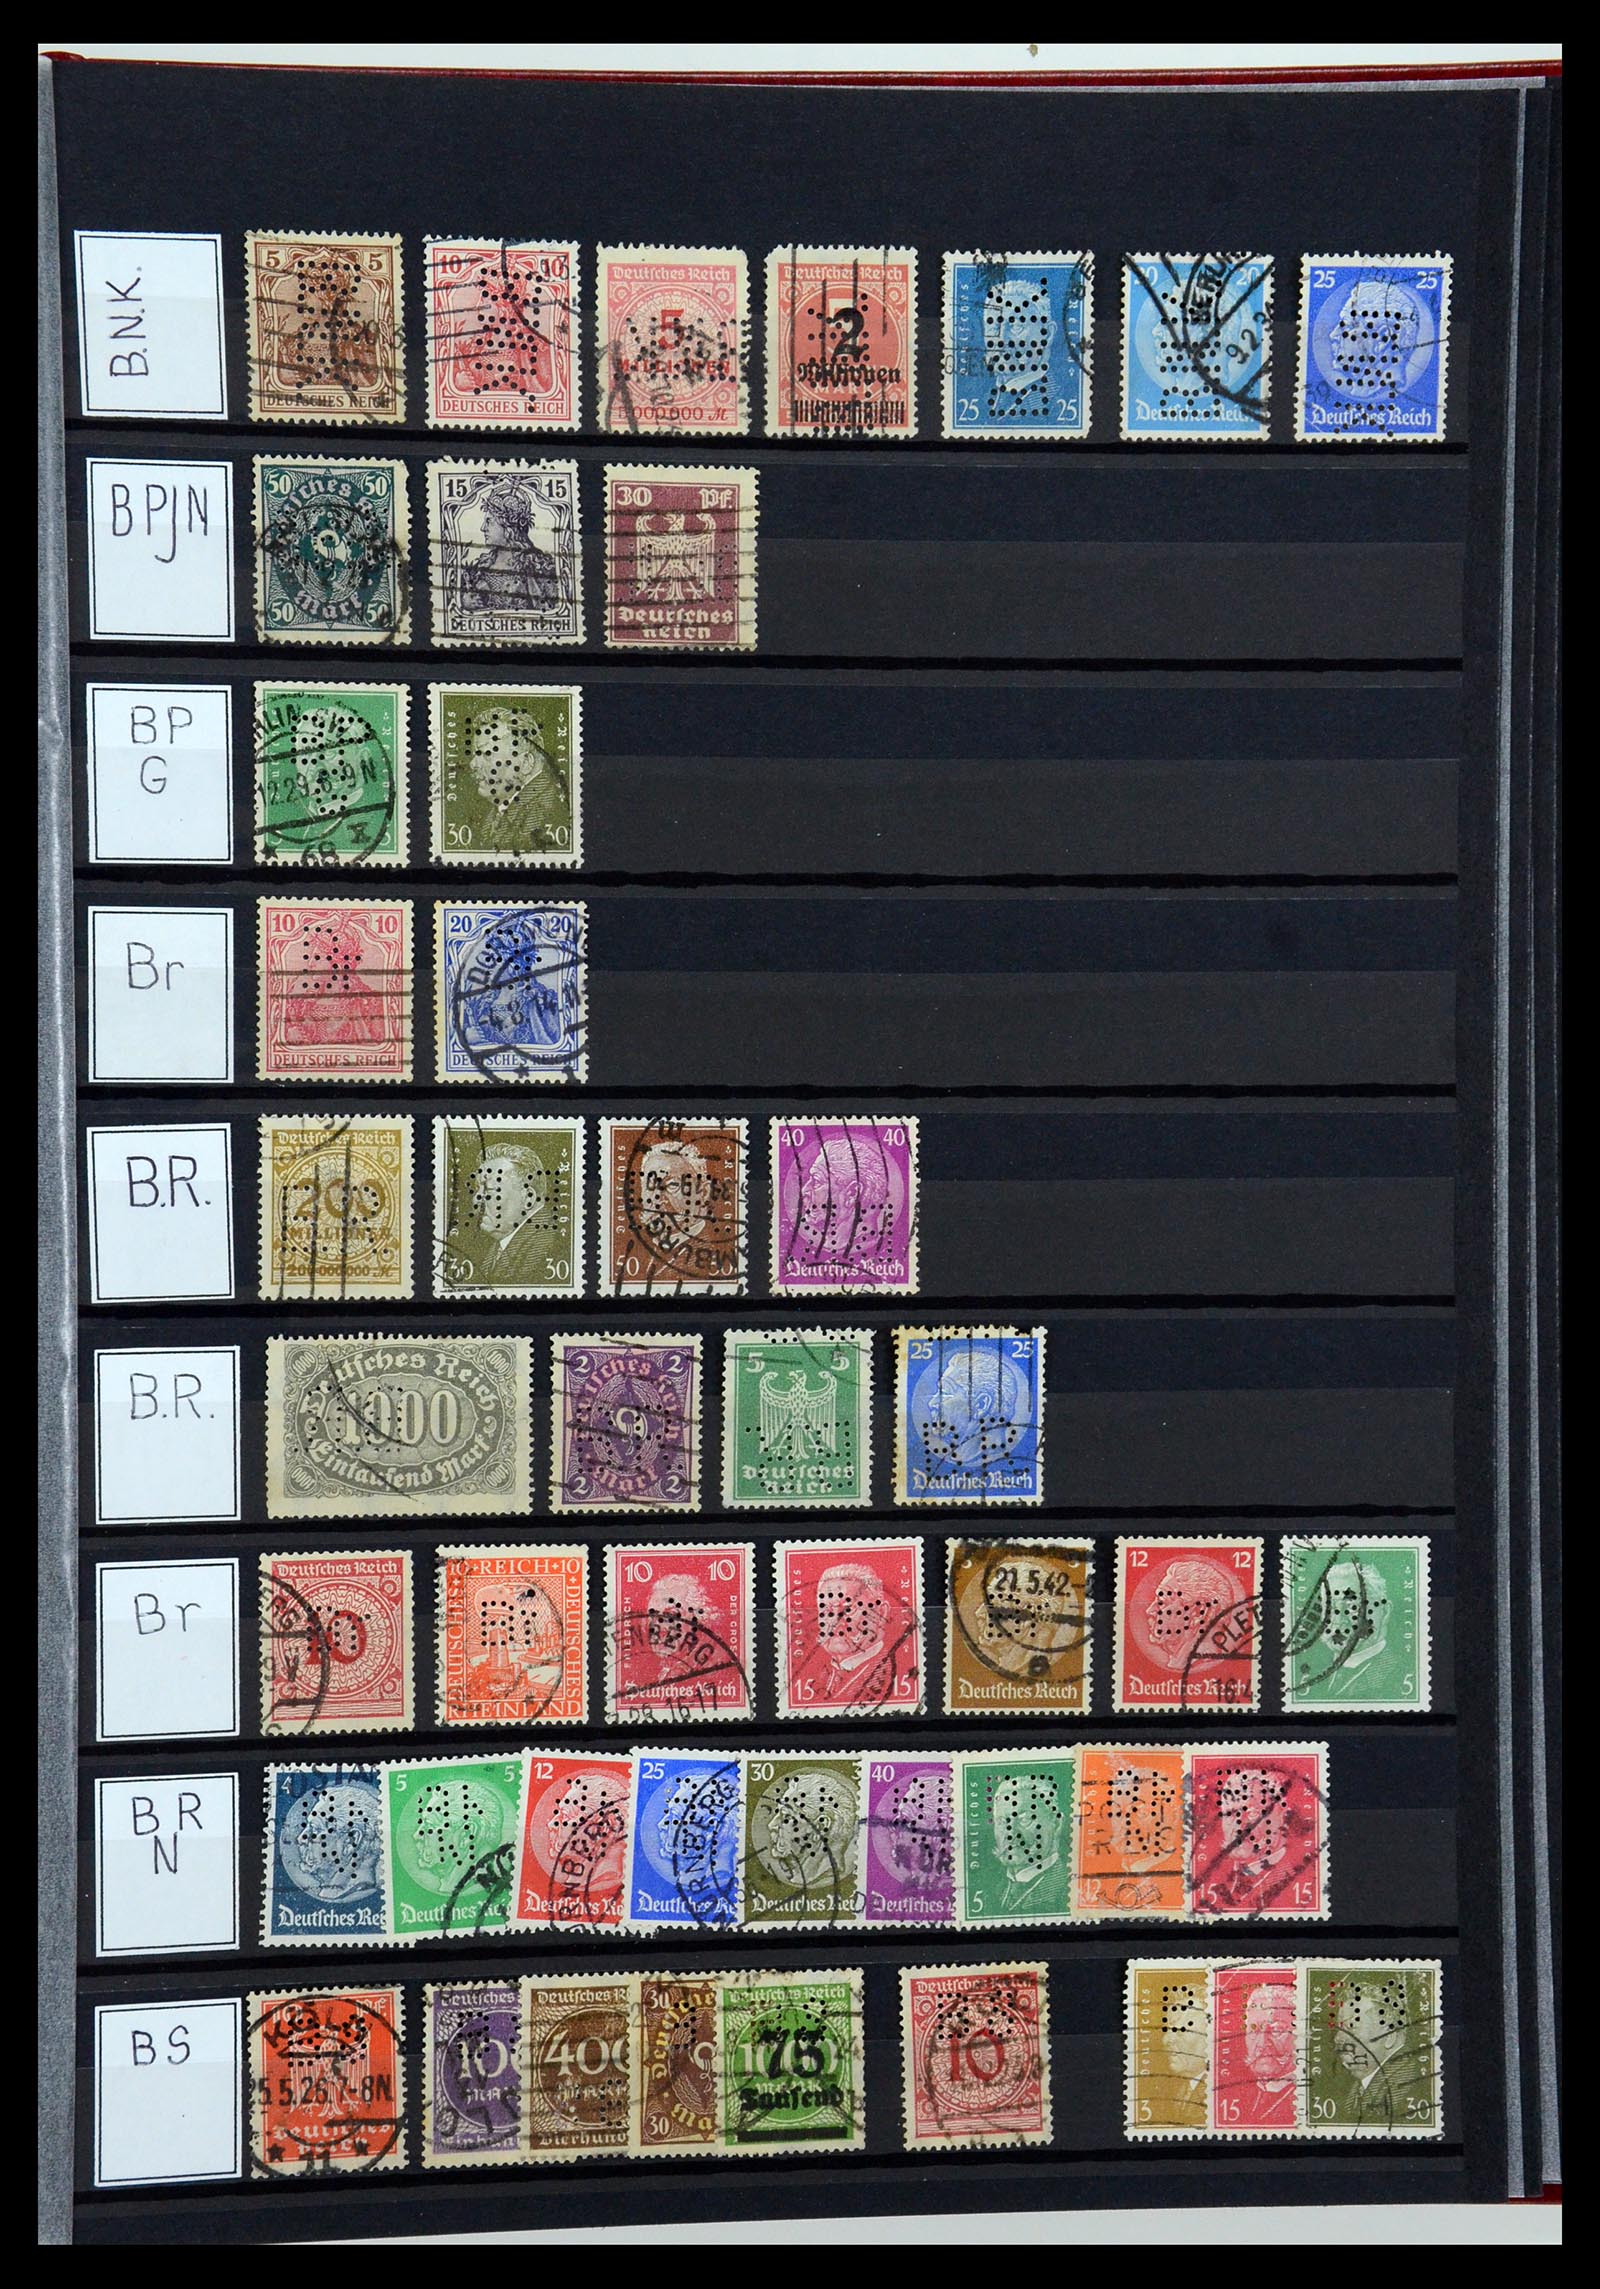 36405 047 - Stamp collection 36405 German Reich perfins 1880-1945.